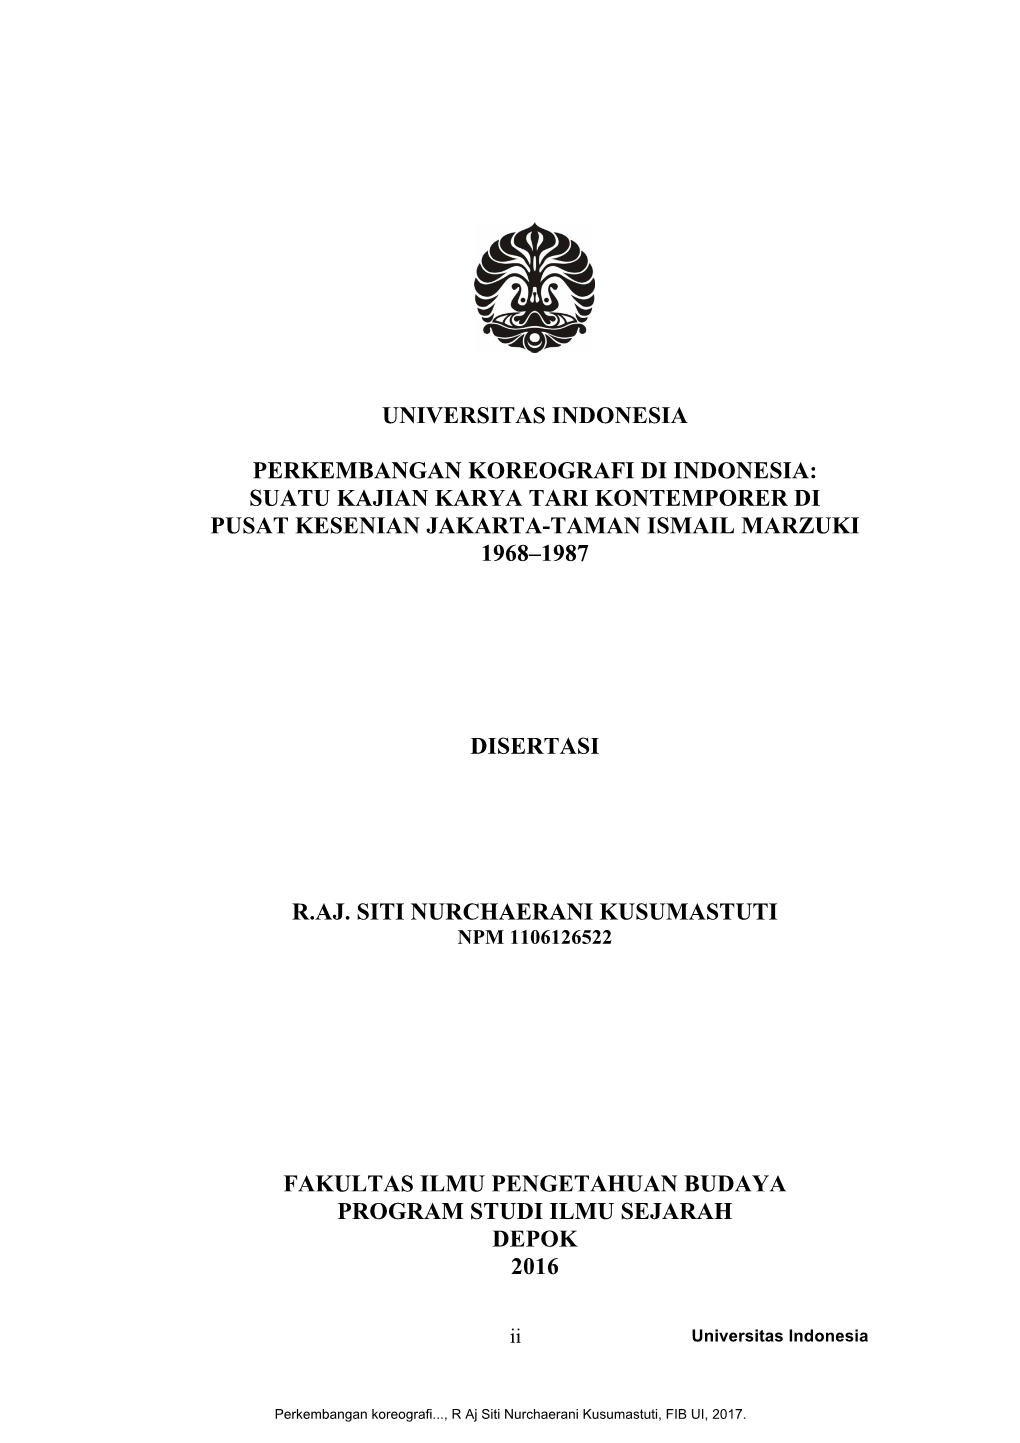 Suatu Kajian Karya Tari Kontemporer Di Pusat Kesenian Jakarta-Taman Ismail Marzuki 1968–1987